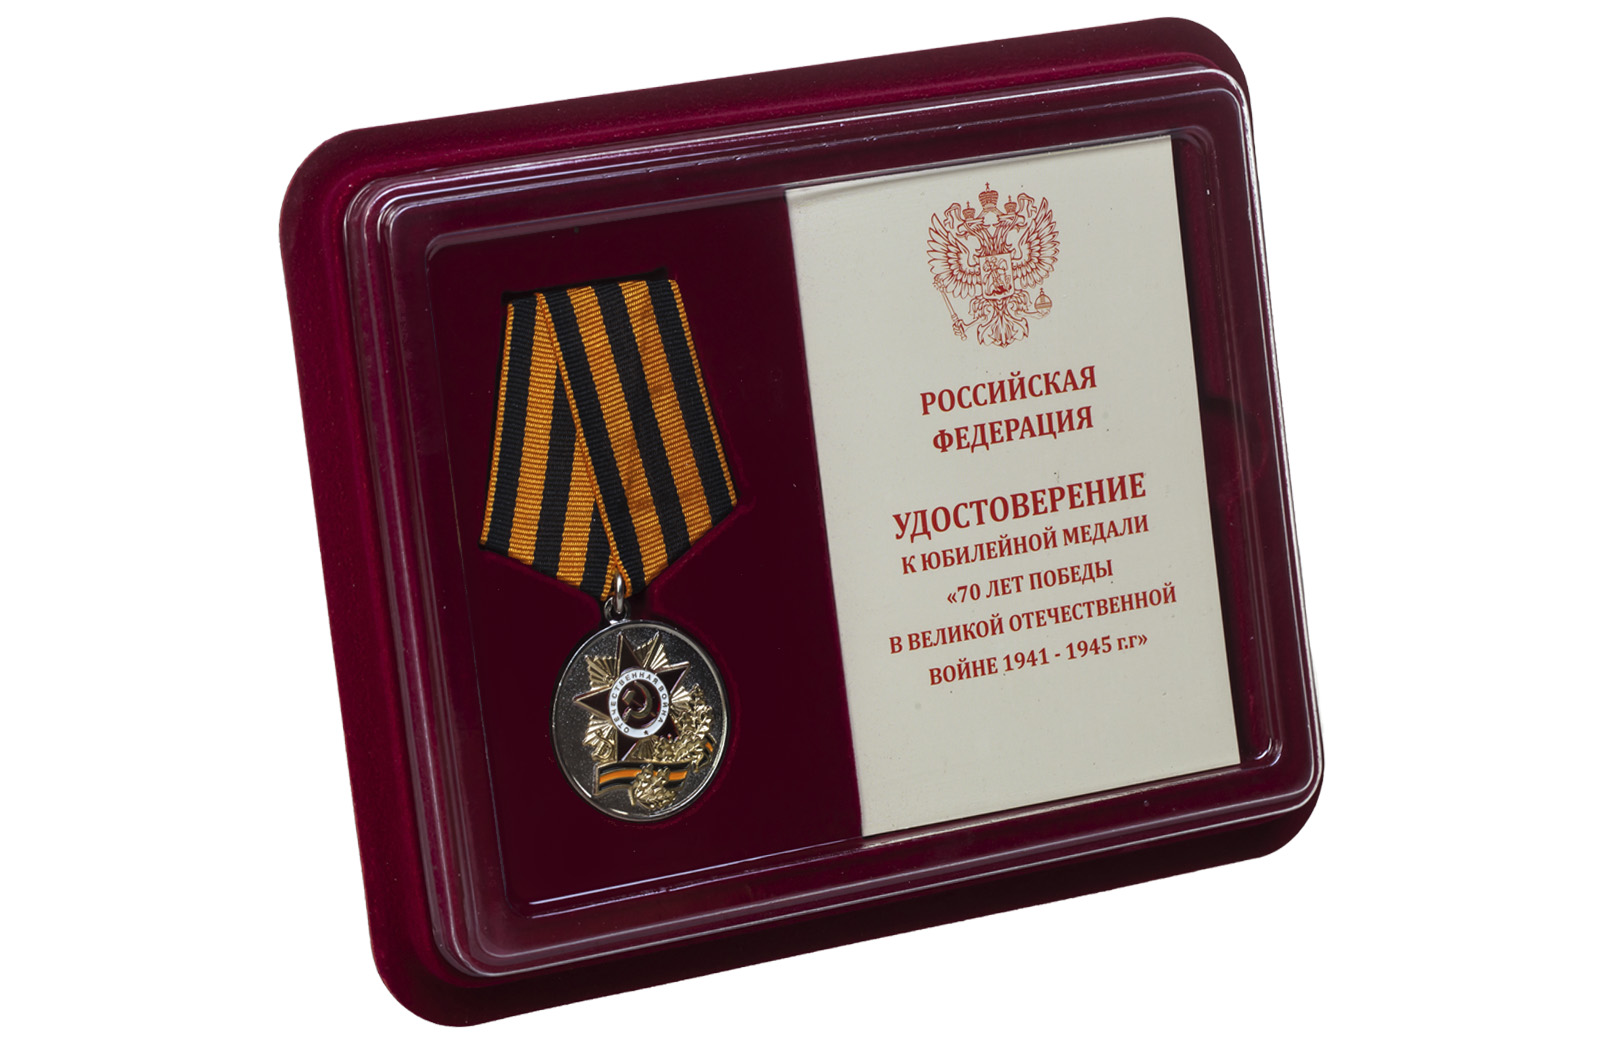 Купить медаль 70 лет Победы в ВОВ в подарок выгодно